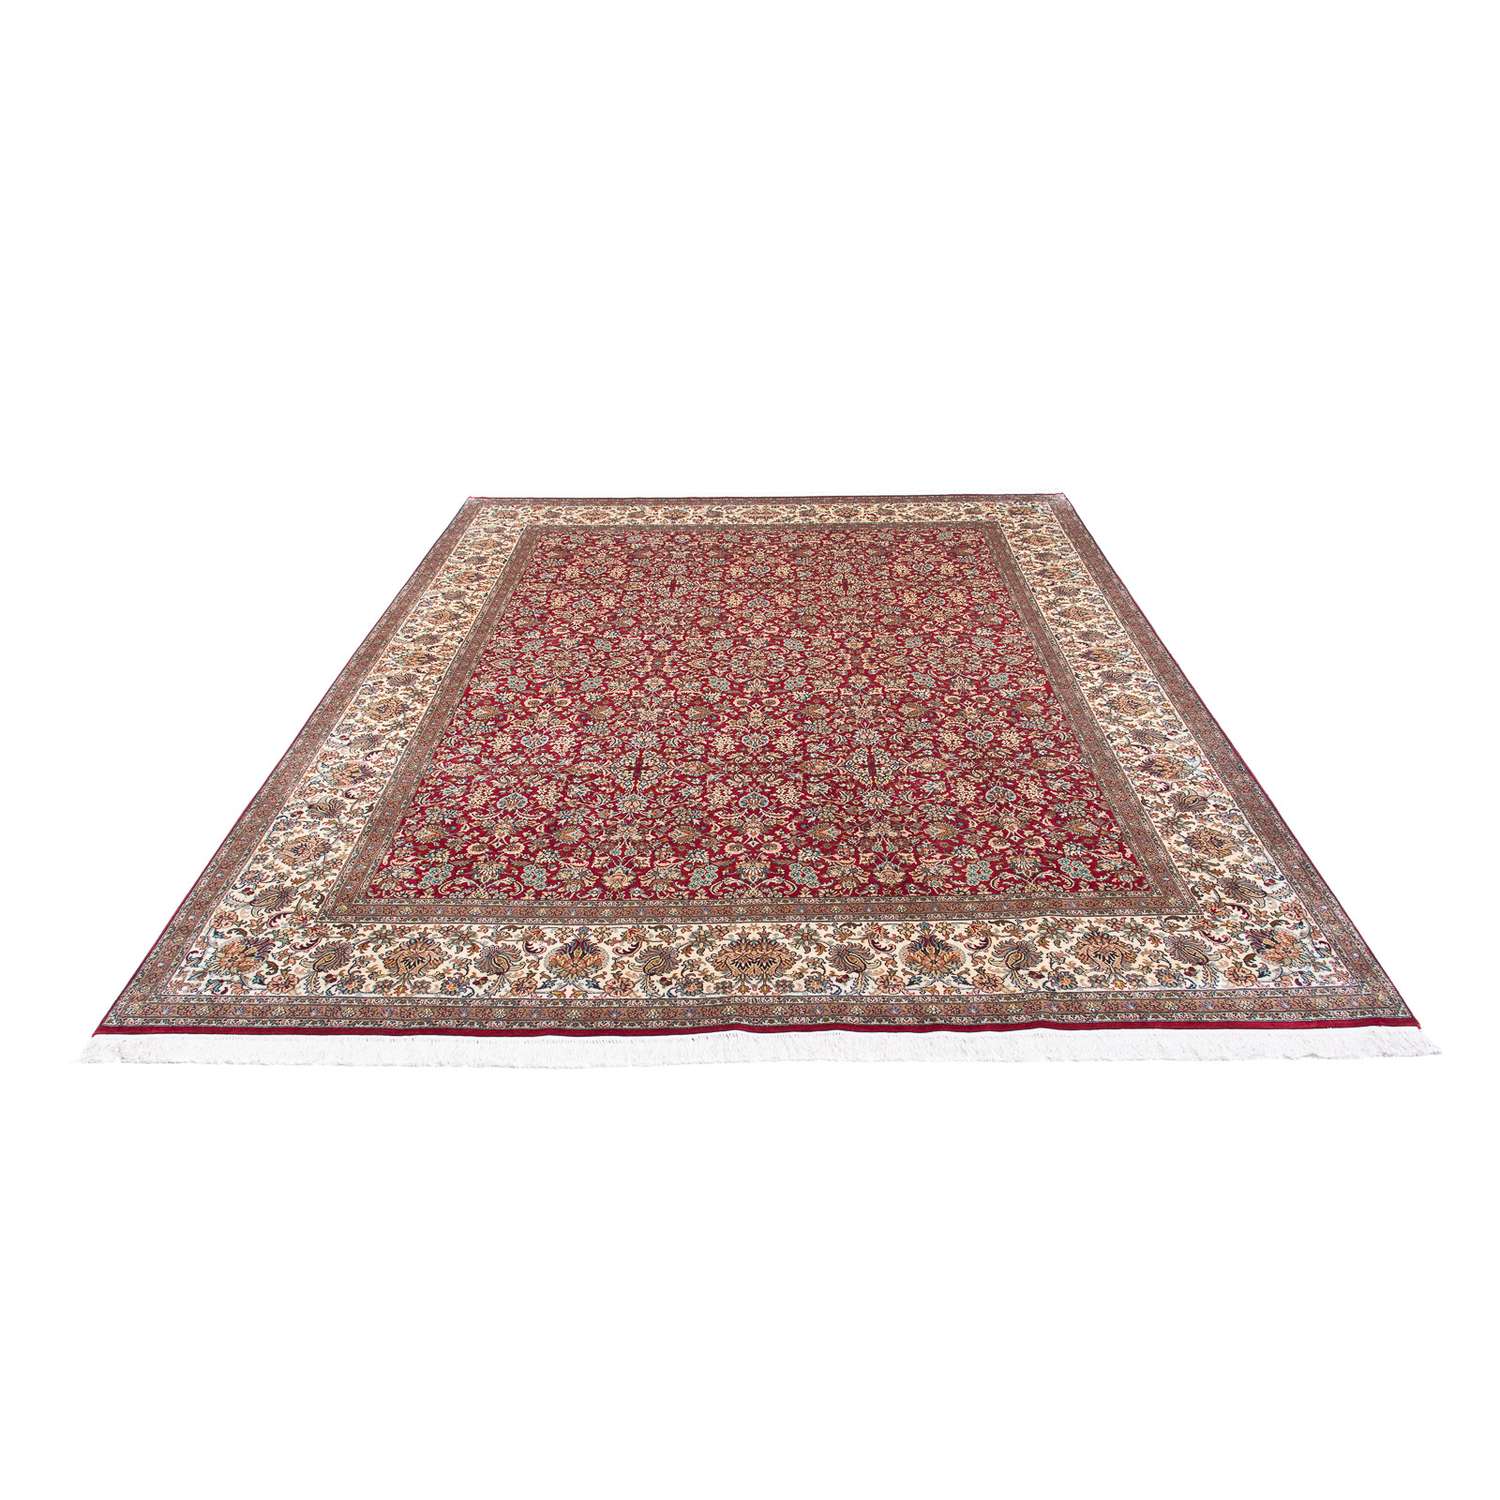 Persisk teppe - klassisk - 308 x 243 cm - lys rød